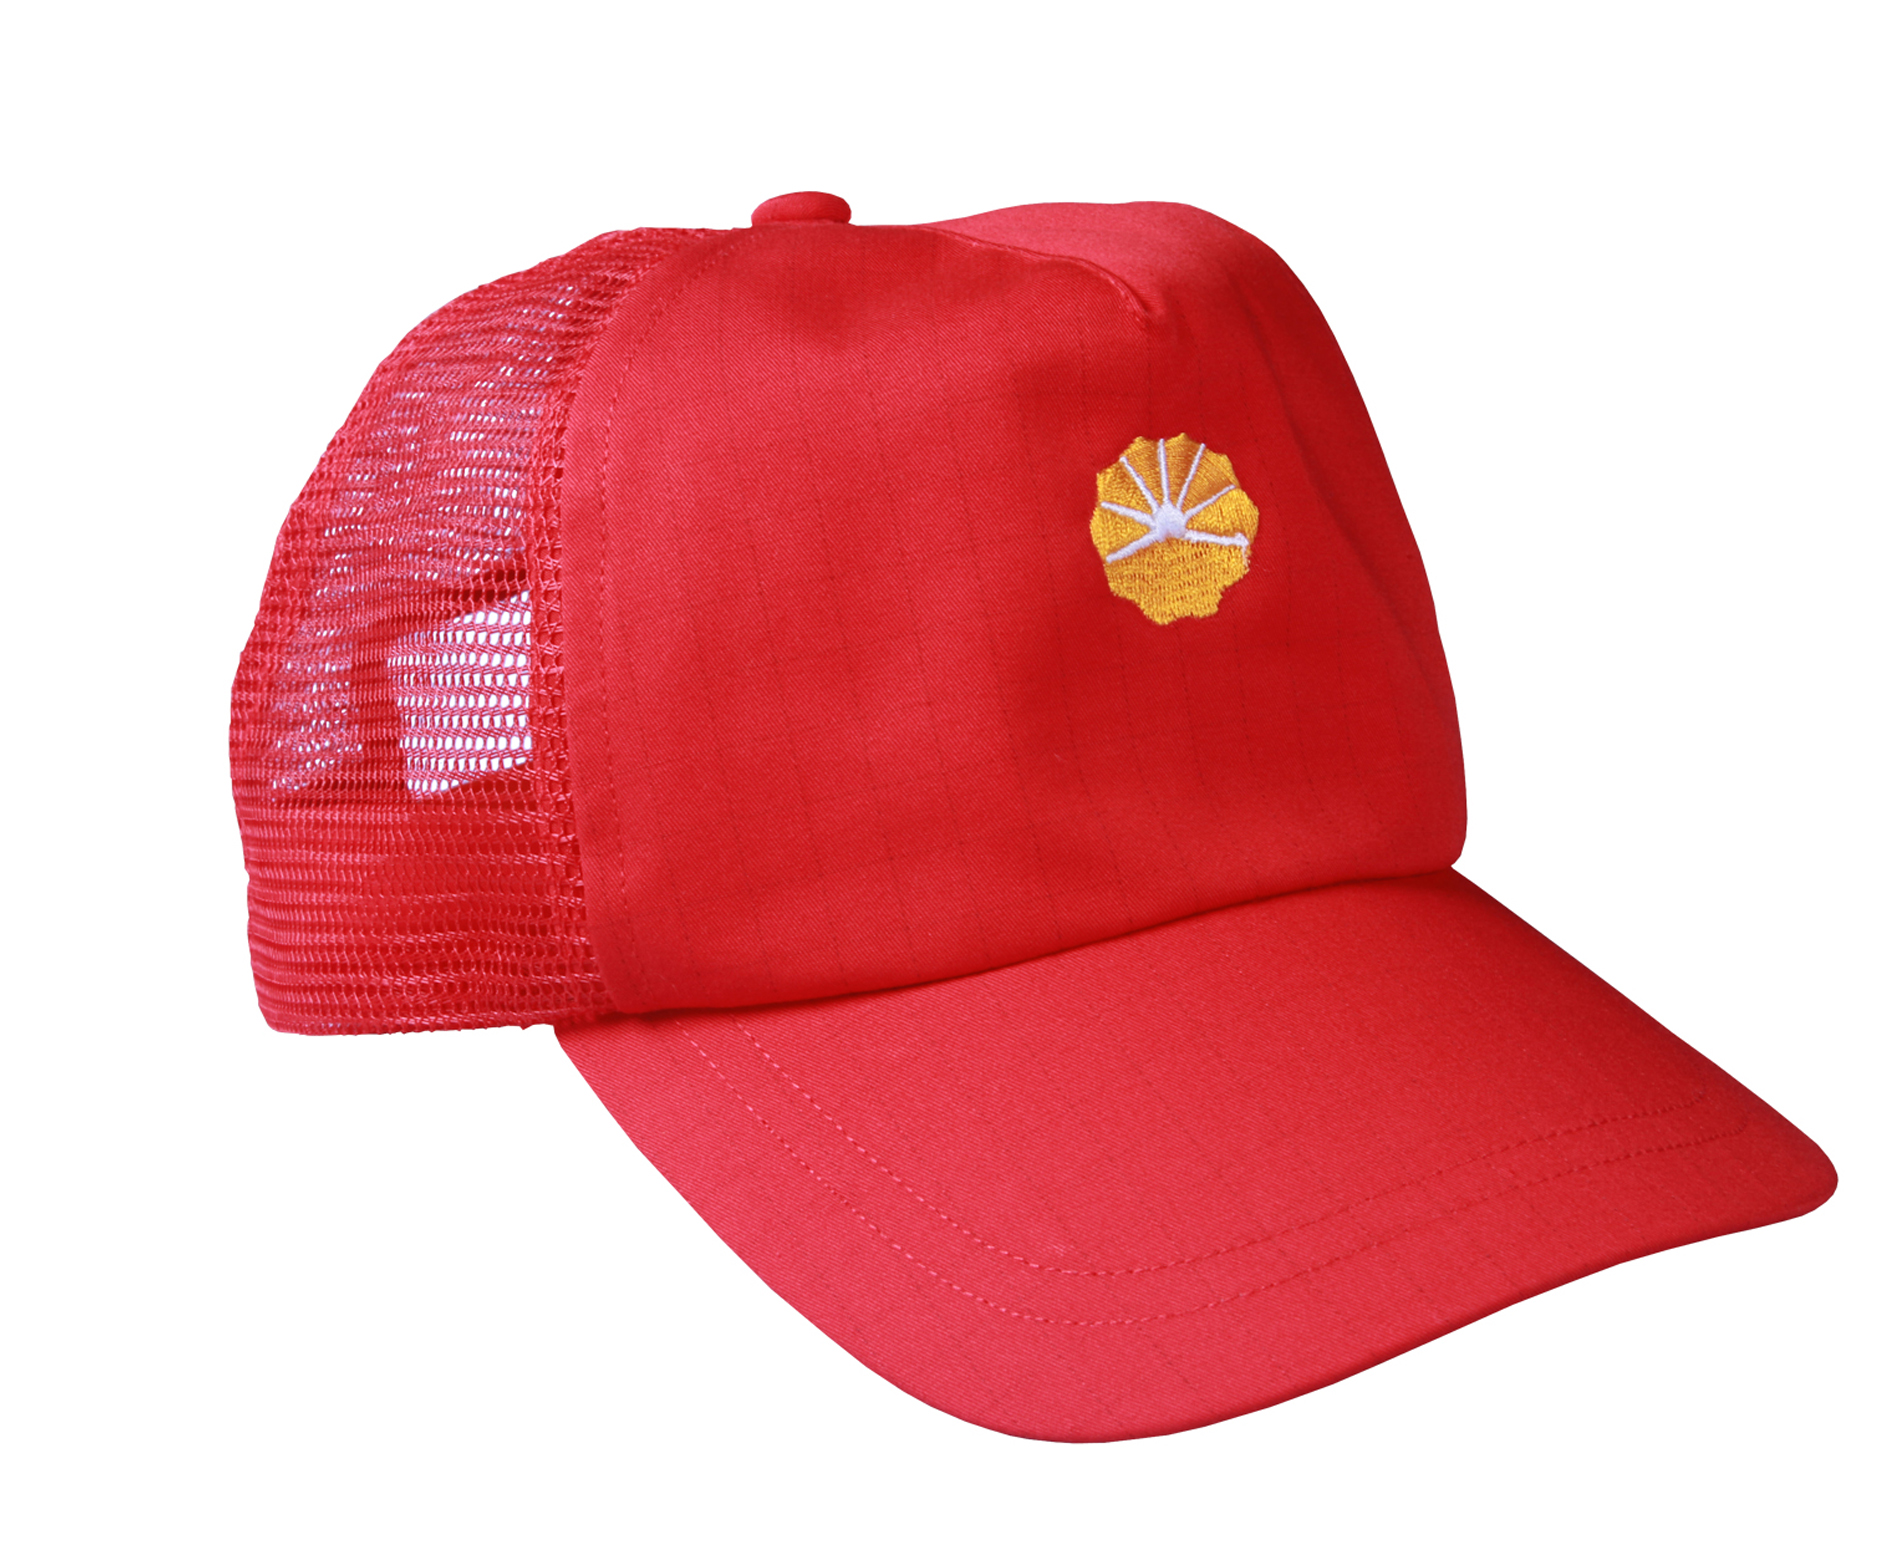 鹤舞ZGSY-M-01定制夏季帽子红色(个)